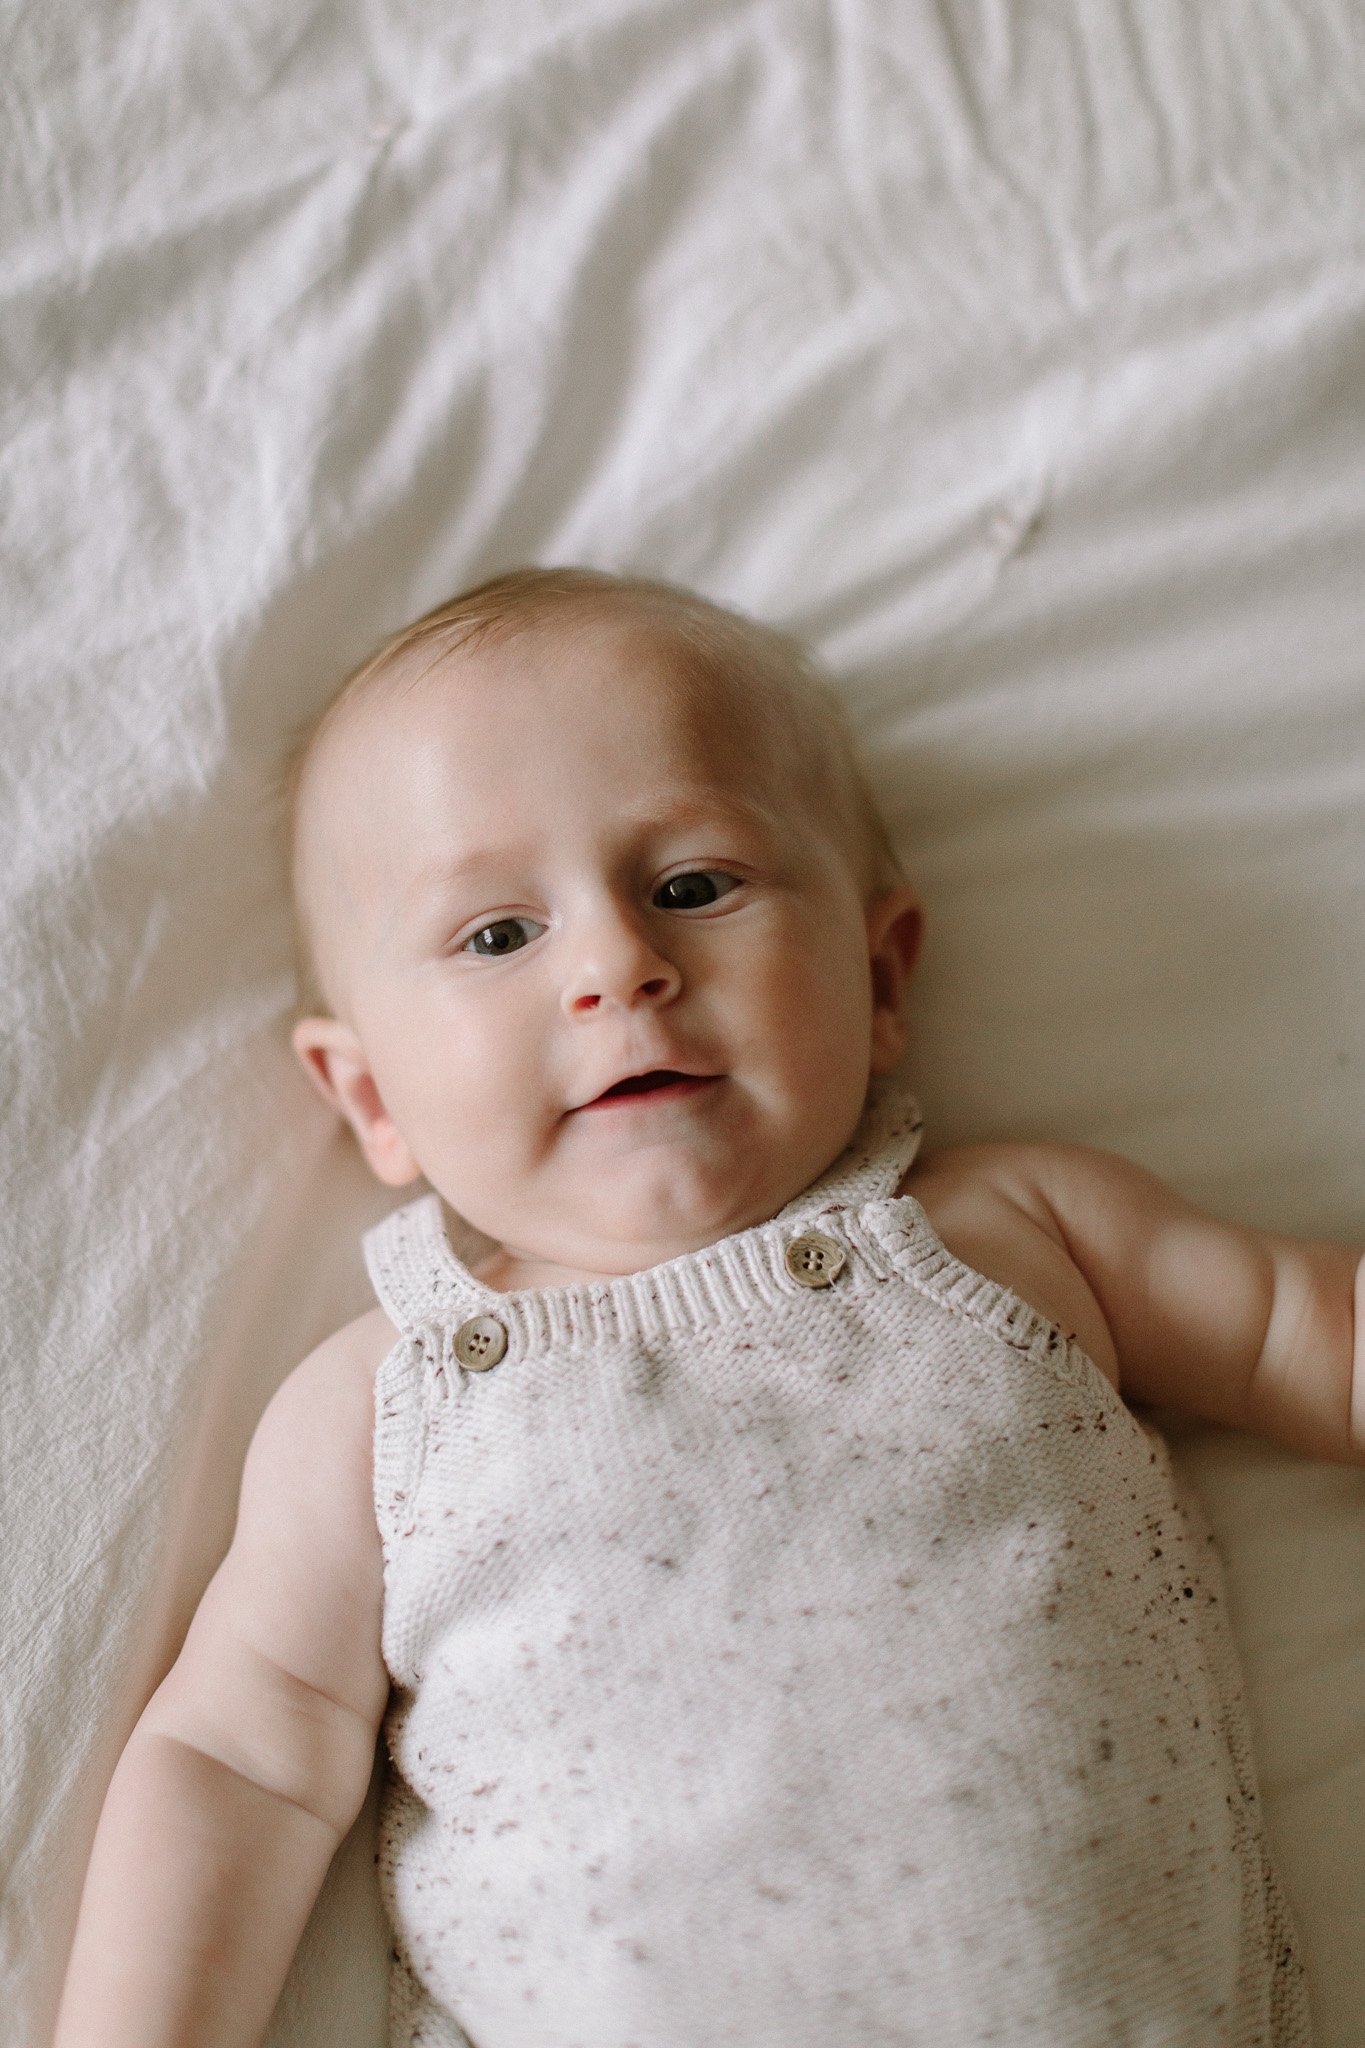  Tunbridge wells baby photography 